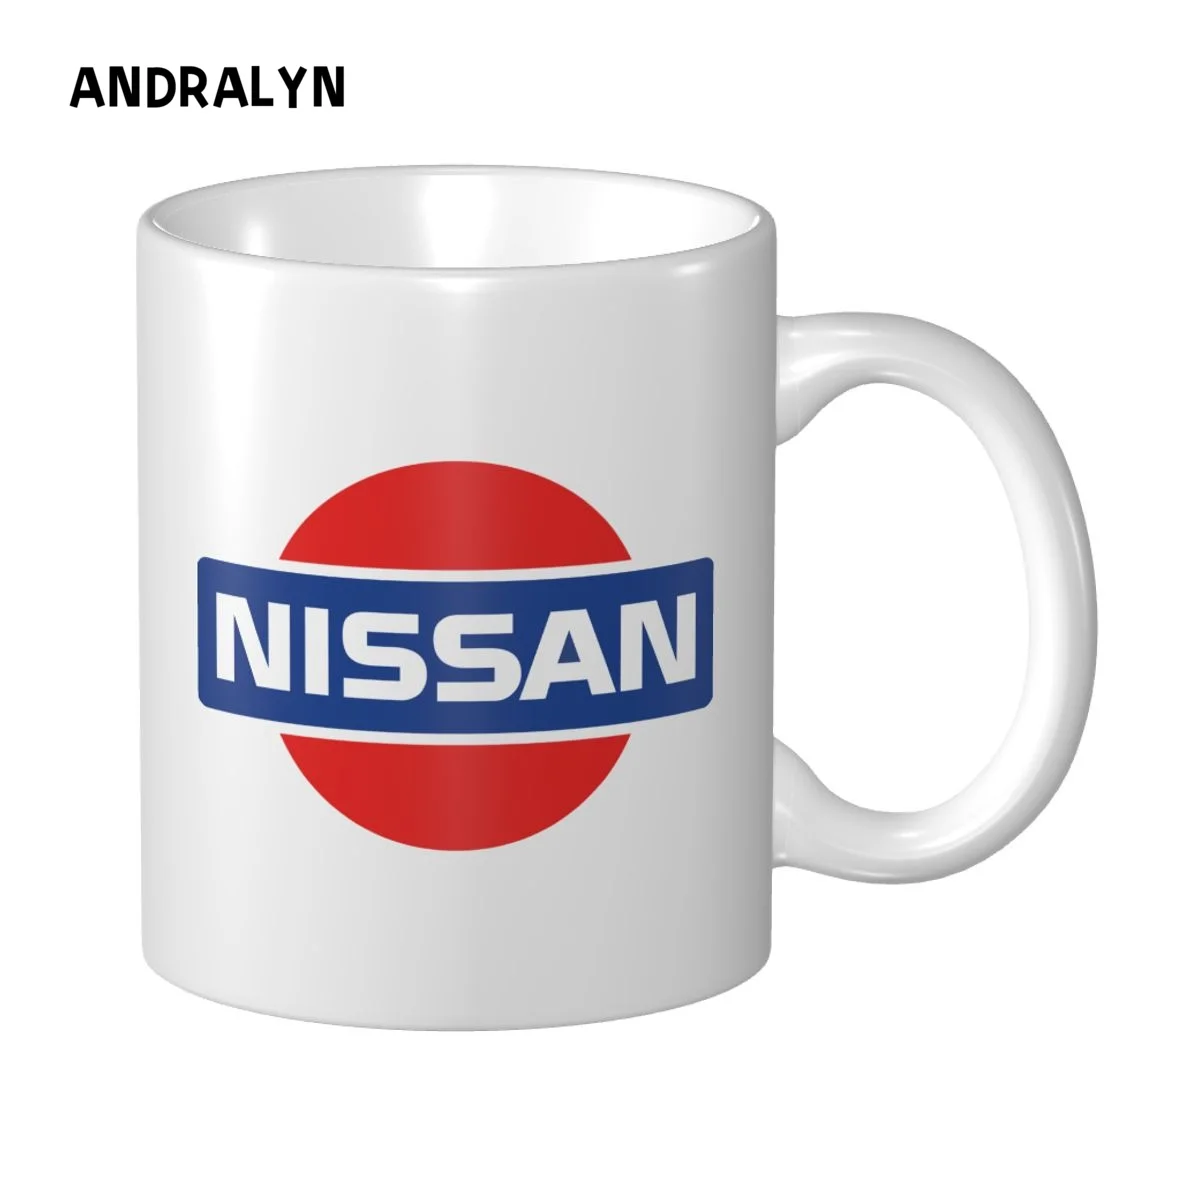 Кружка с винтажным логотипом Nissan Datsun Motor, 330 мл, керамические креативные кружки для чая с молоком, кофе, Забавный подарок друзьям на День рождения 0